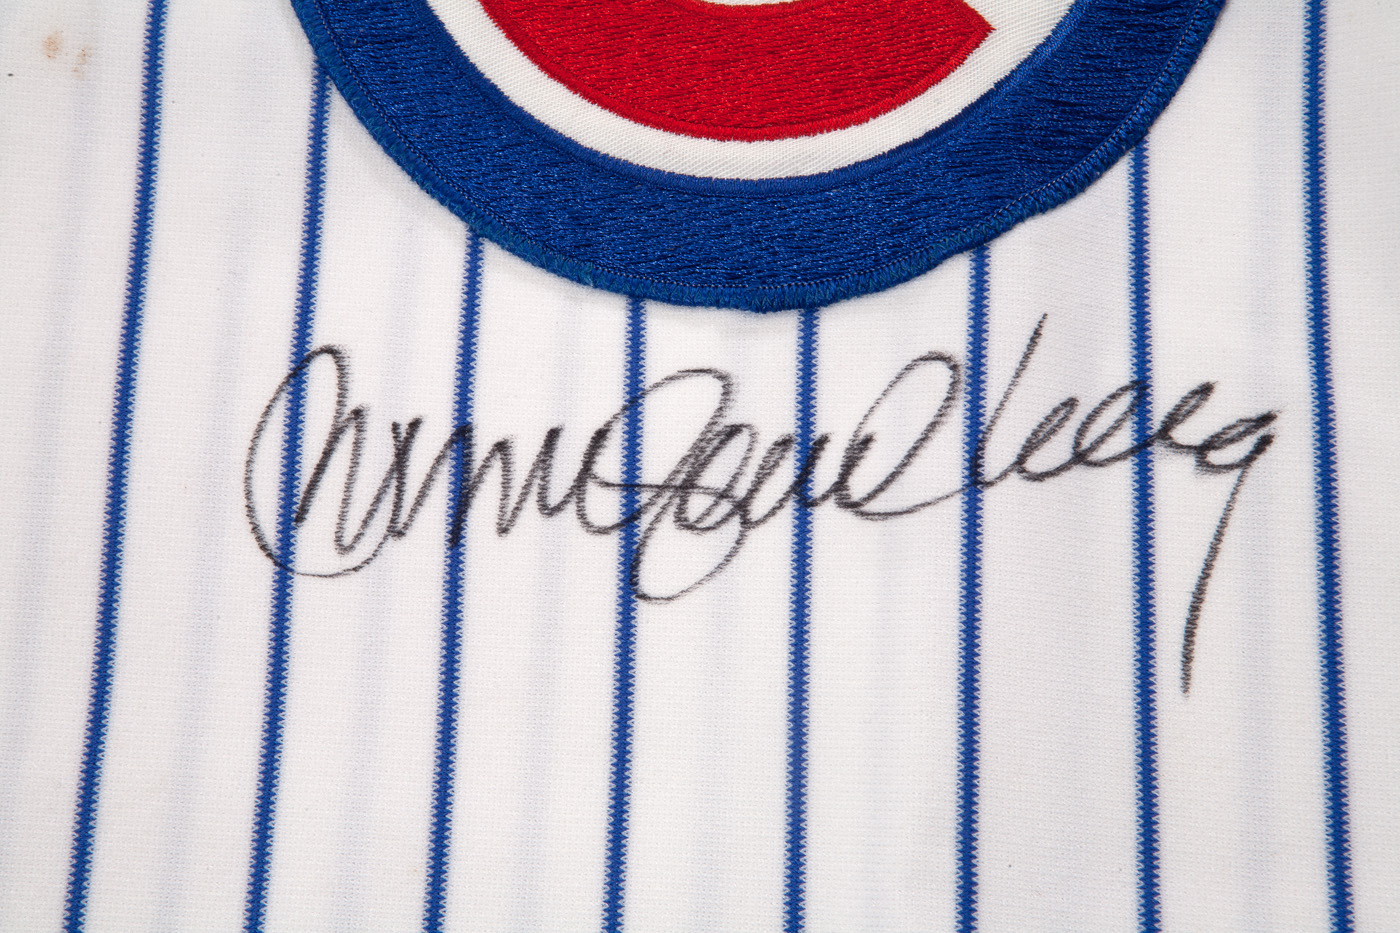 Ryne Sandberg Signed Chicago Cubs Career Stat Jersey Inscribed HOF 05 –